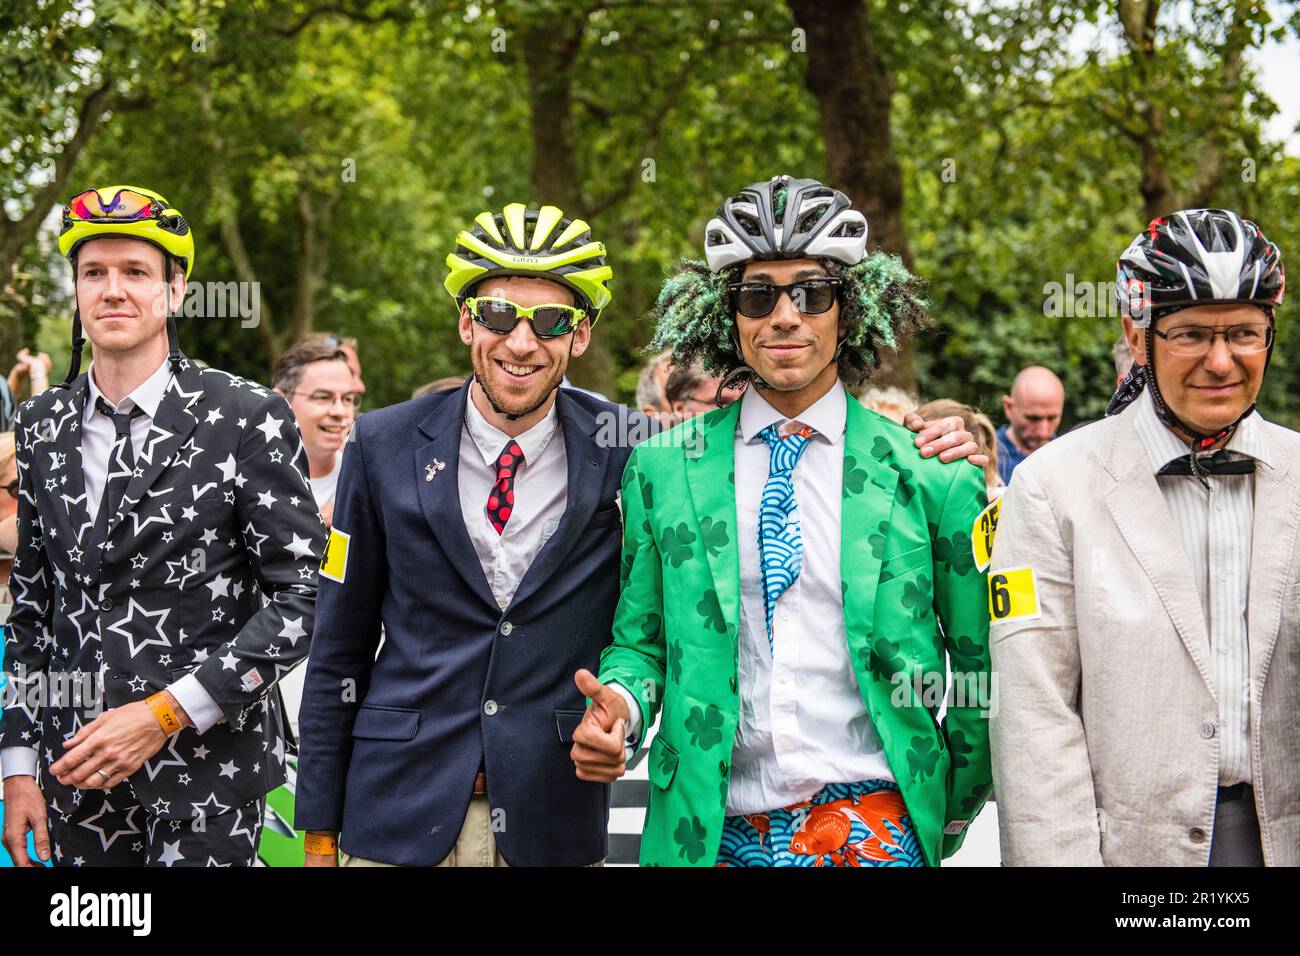 Vêtu d'une bonne tenue, les cavaliers/cyclistes de Brompton se préparent à la course, le Championnat du monde de Brompton de Prudential RideLondon 2019 Banque D'Images